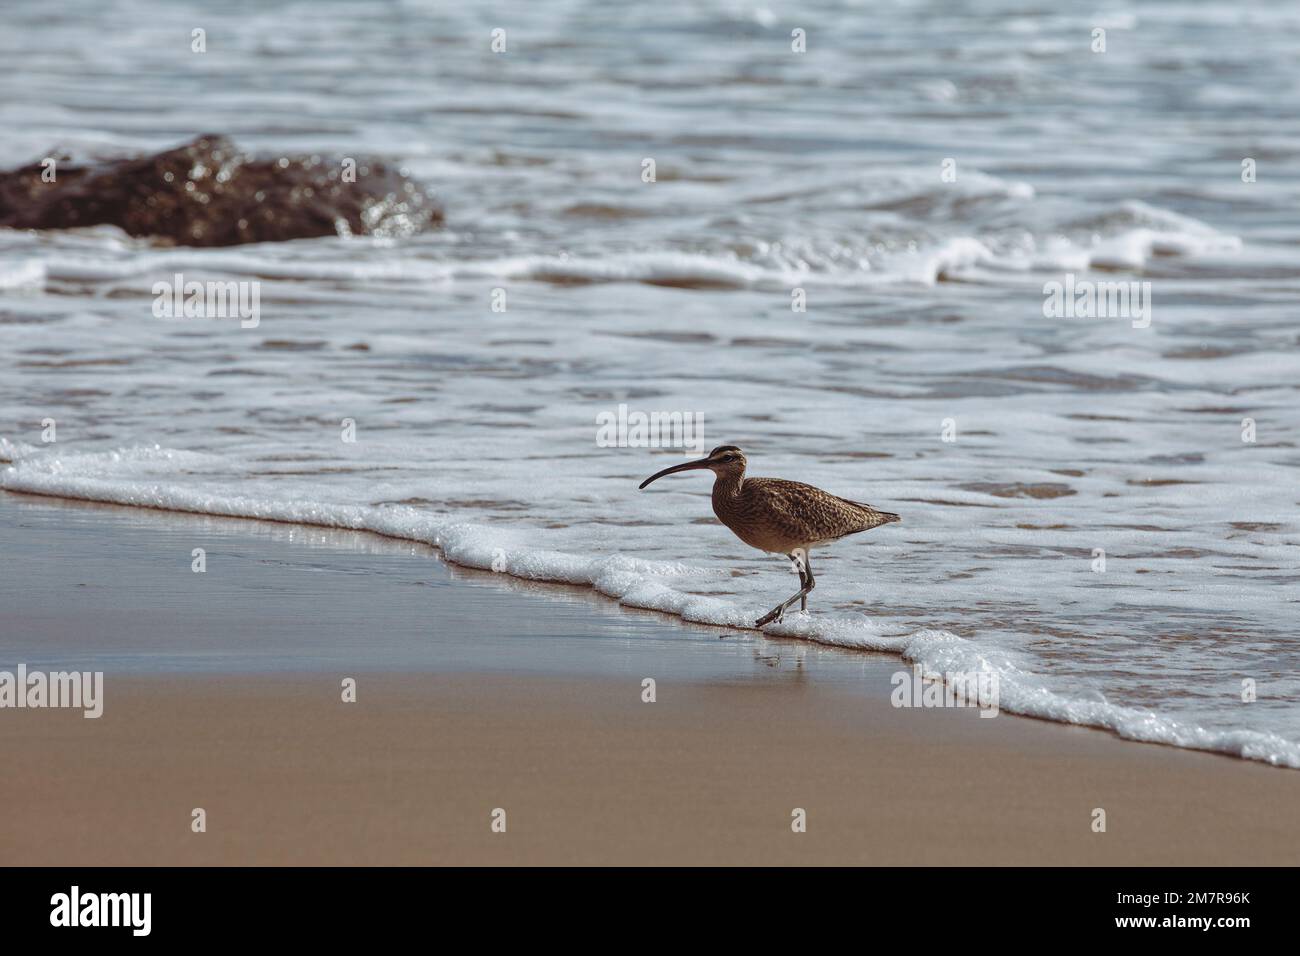 Shorebird on beach Stock Photo